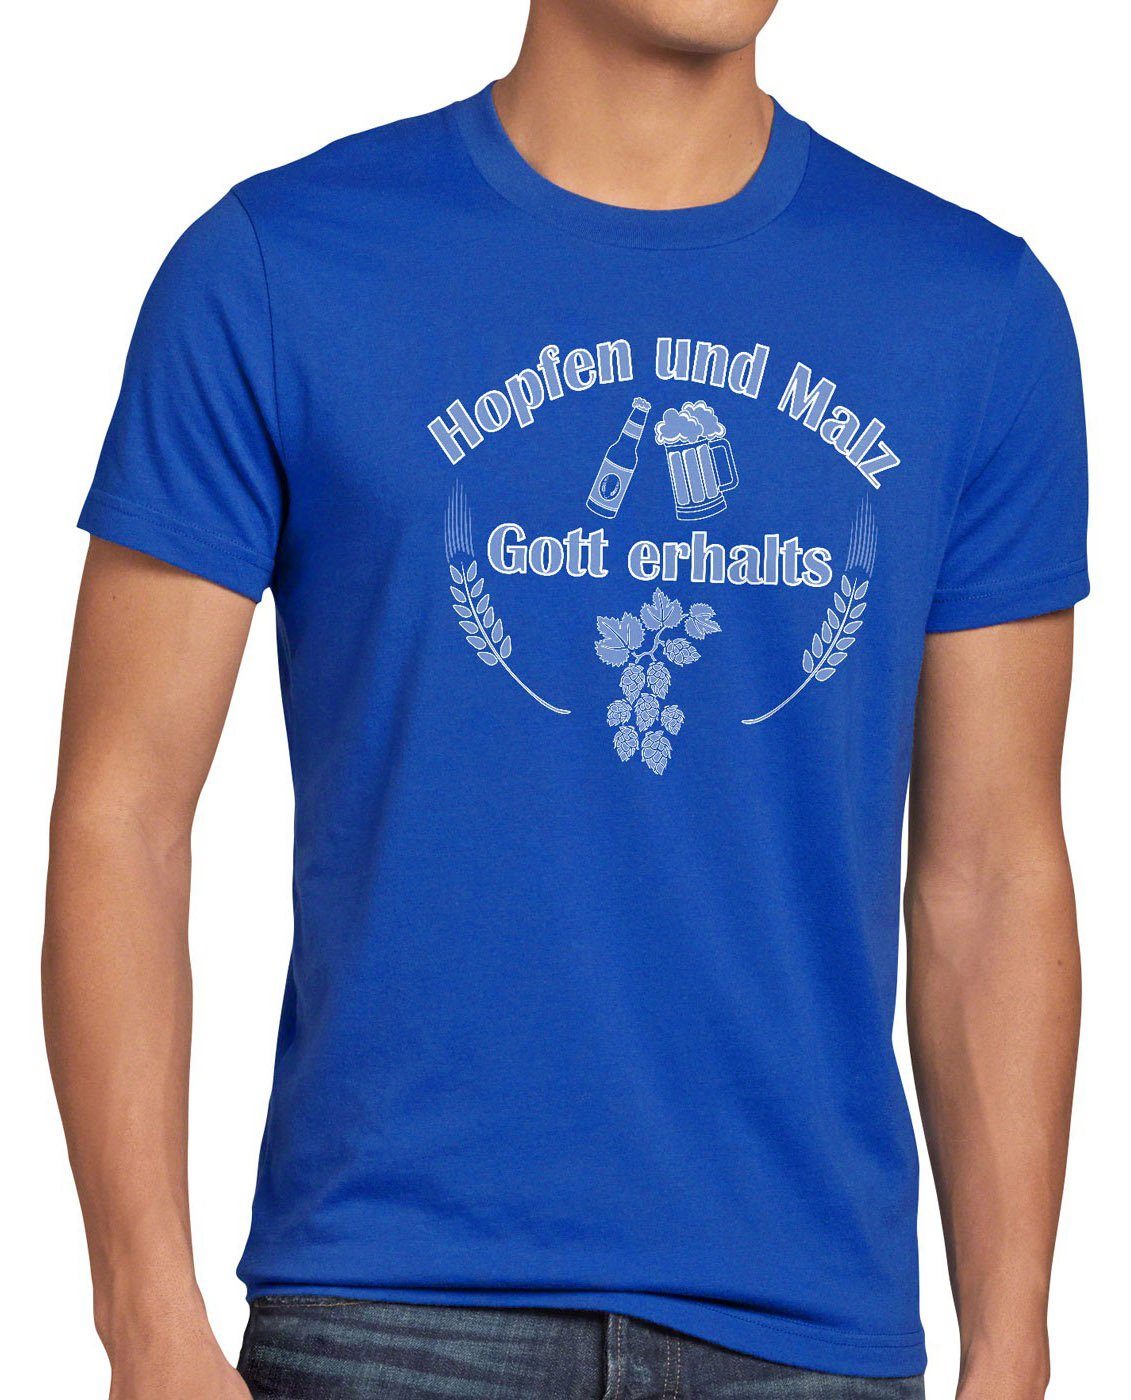 und Fun Funshirt Spruchshirt Bier style3 blau Malz erhalts Hopfen Spruch T-Shirt Gott Herren Print-Shirt